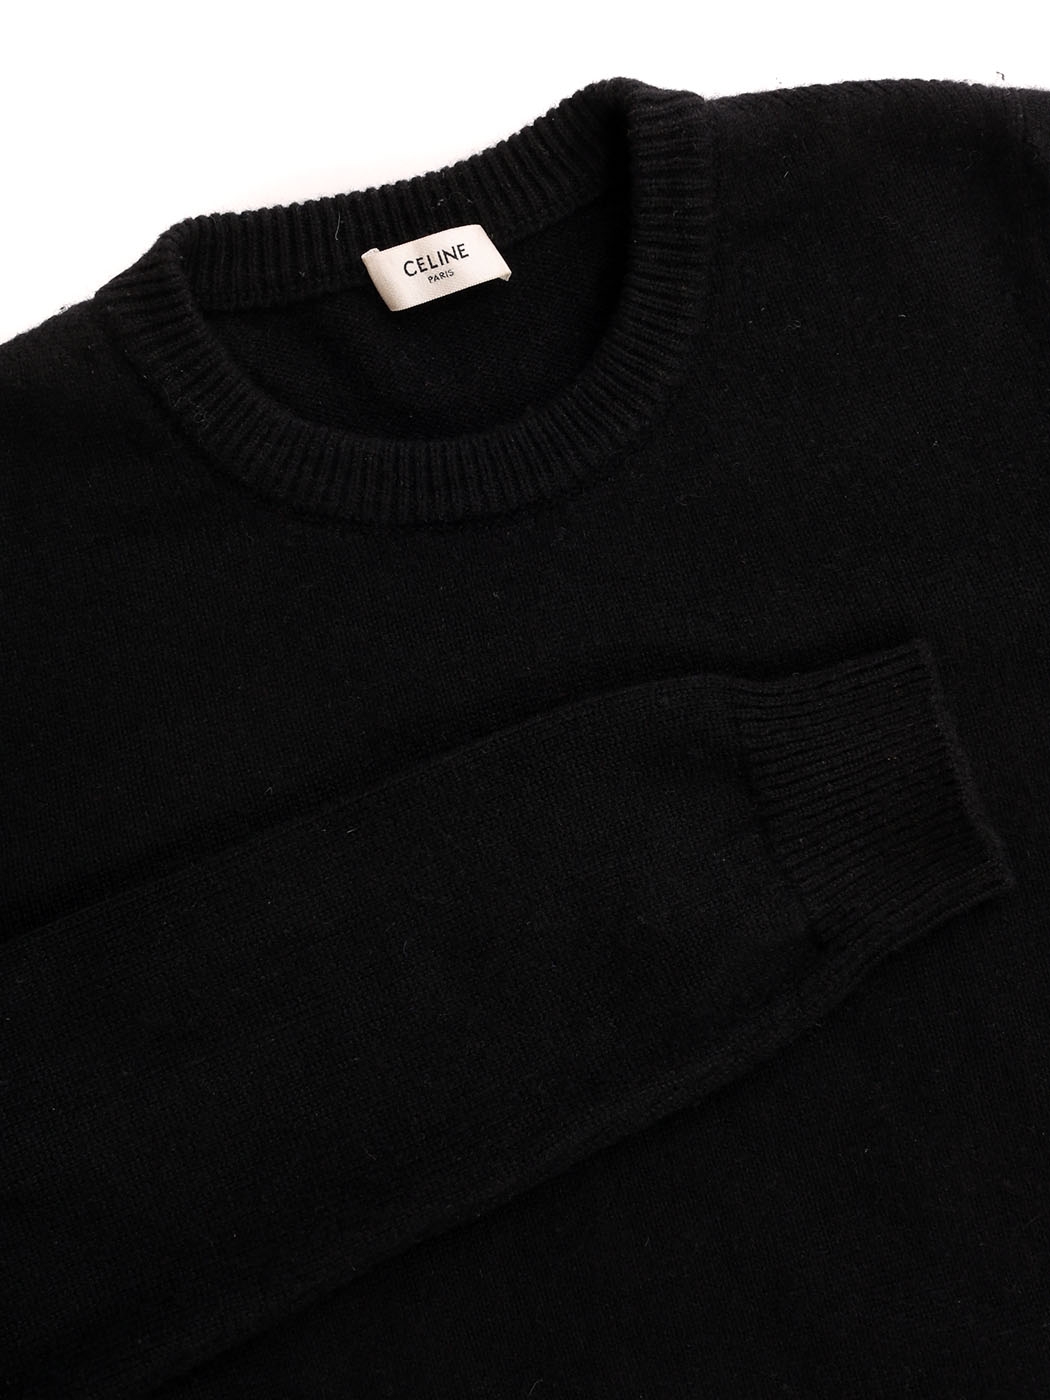 celine paris anchor sweater in cashmere fleece